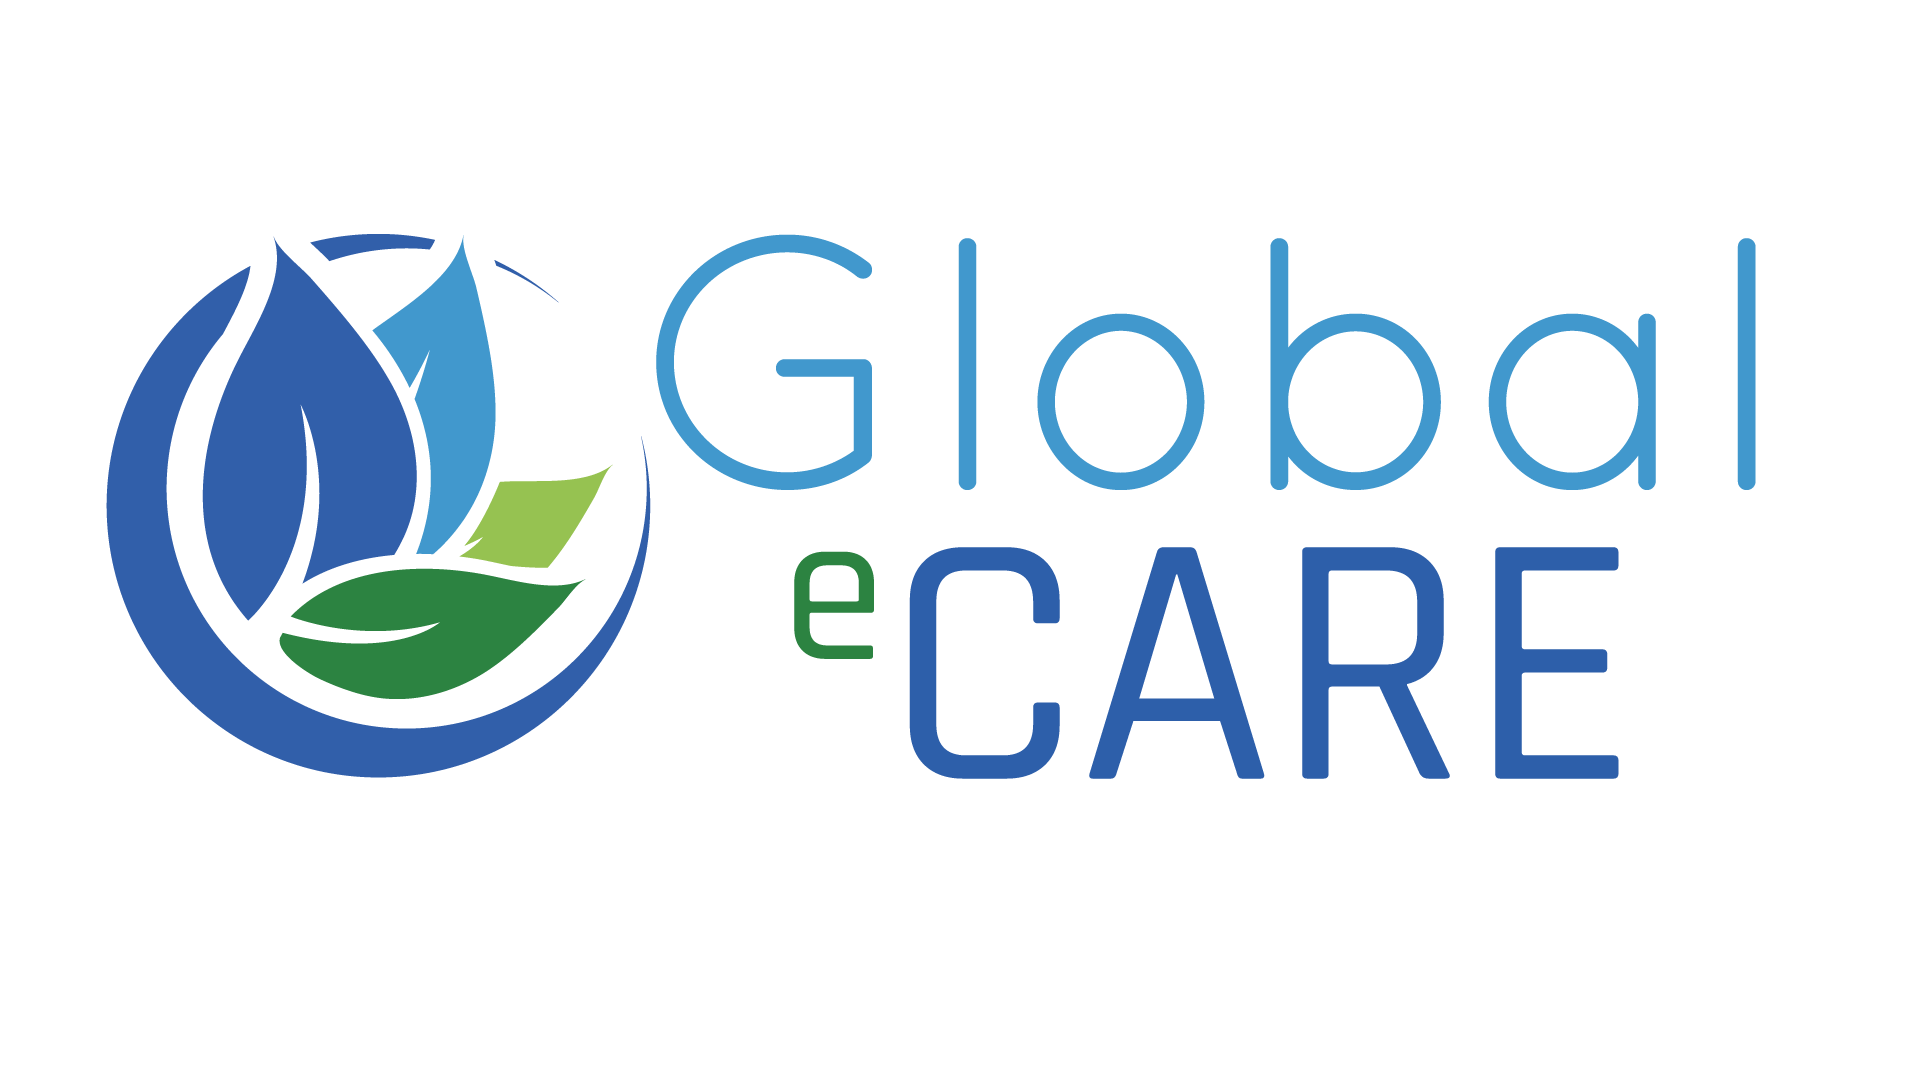 logo_global